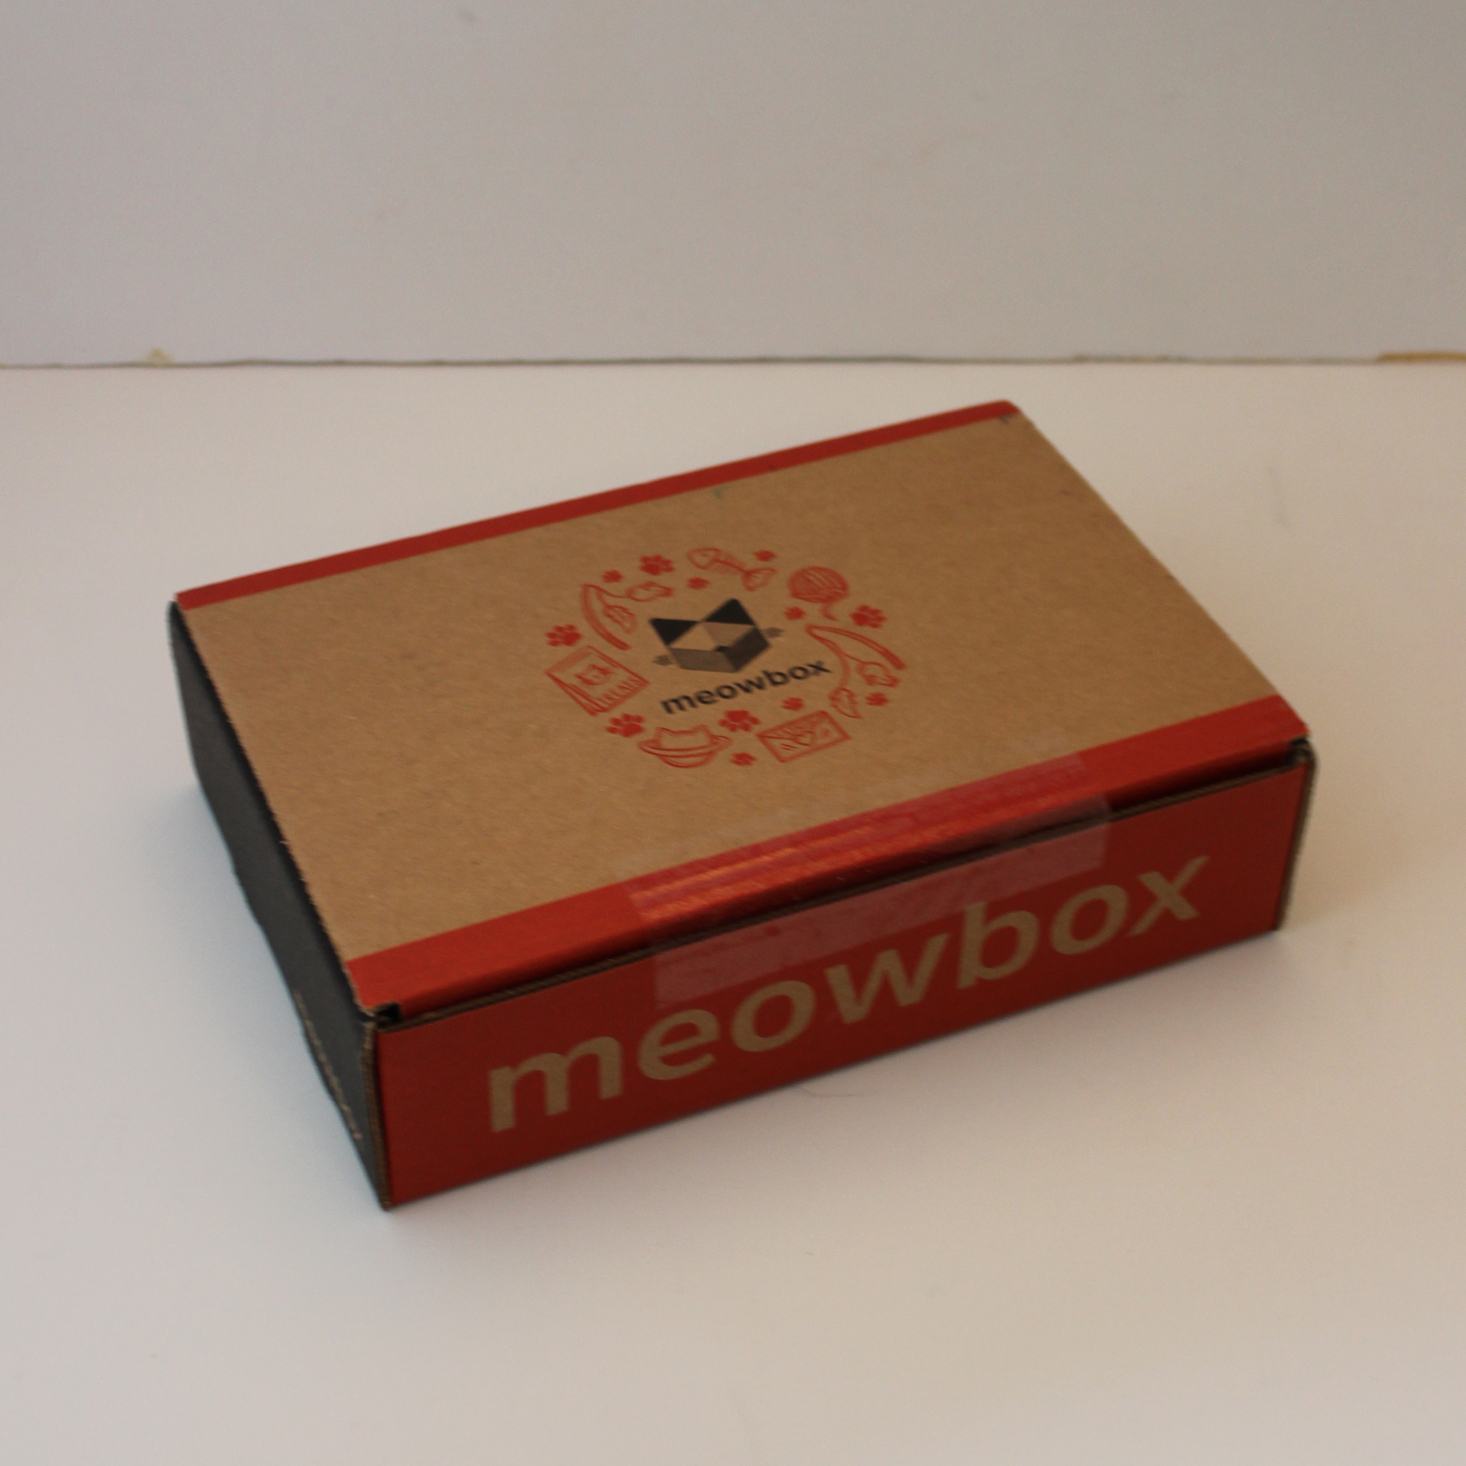 meowbox Cat Subscription Box Review + Coupon – November 2019